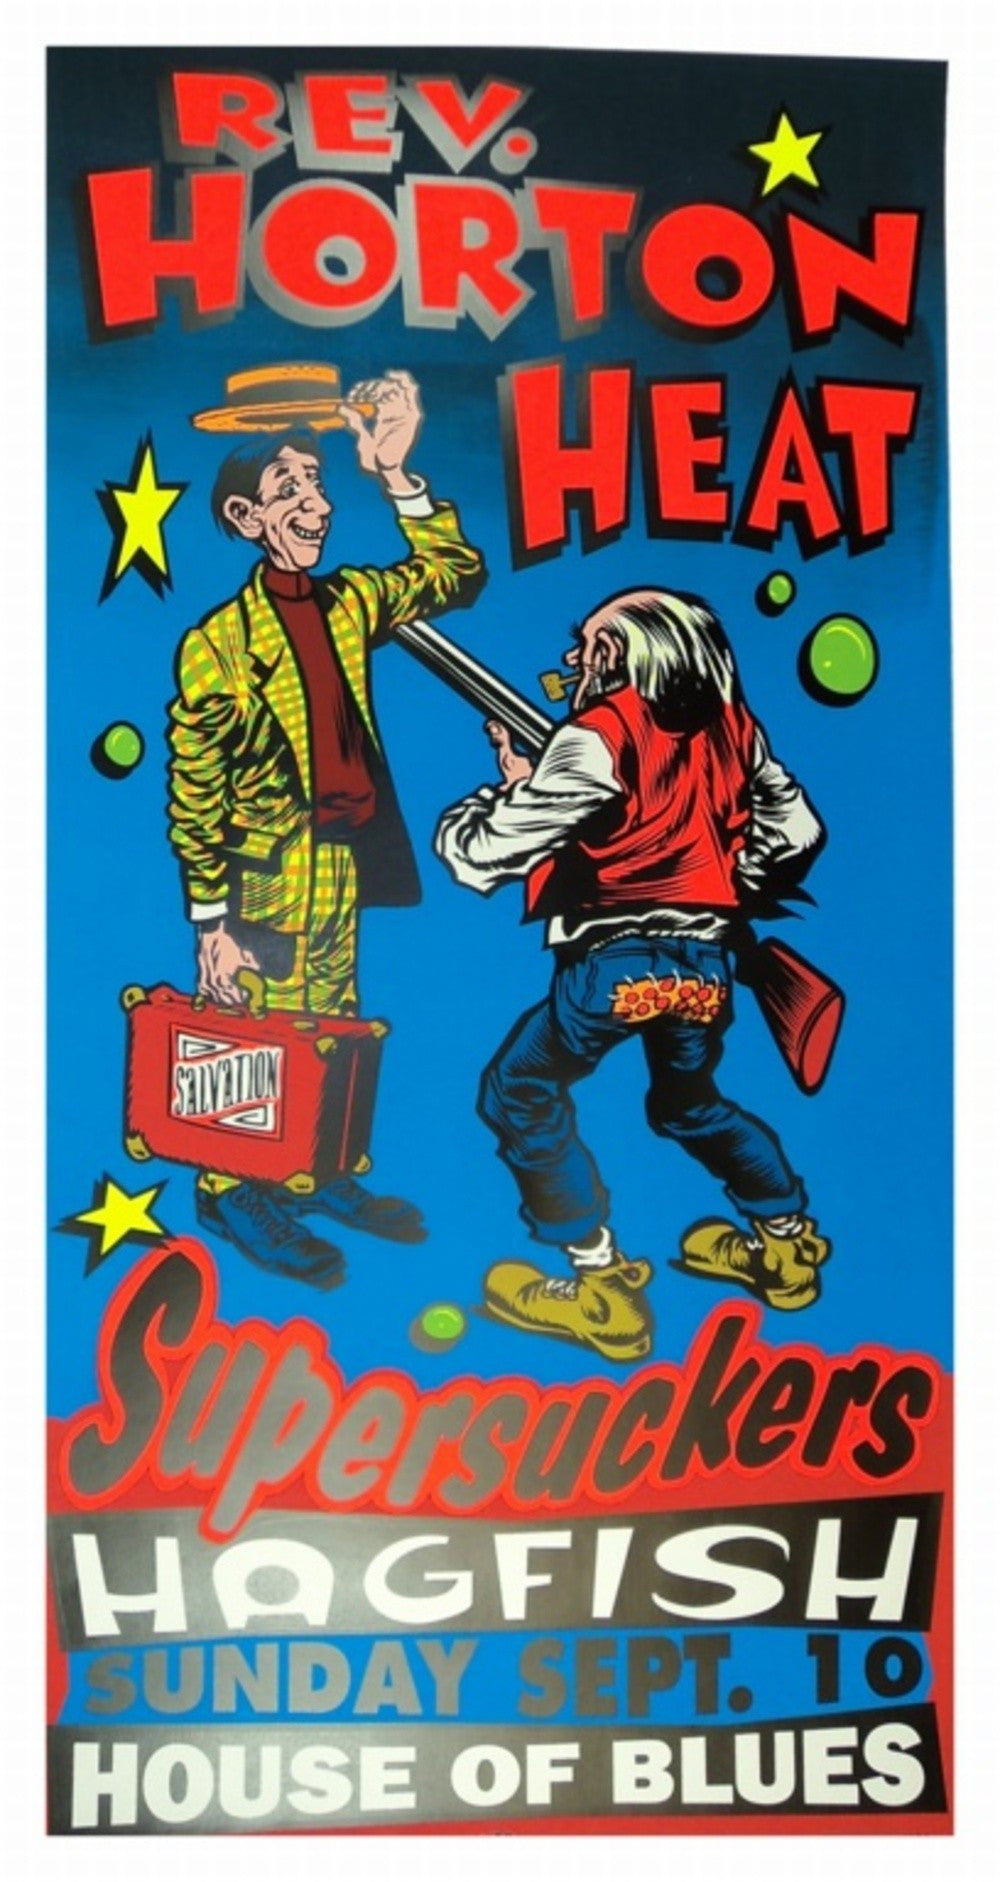 TAZ - 1995 - Reverned Horton Heat Concert Poster